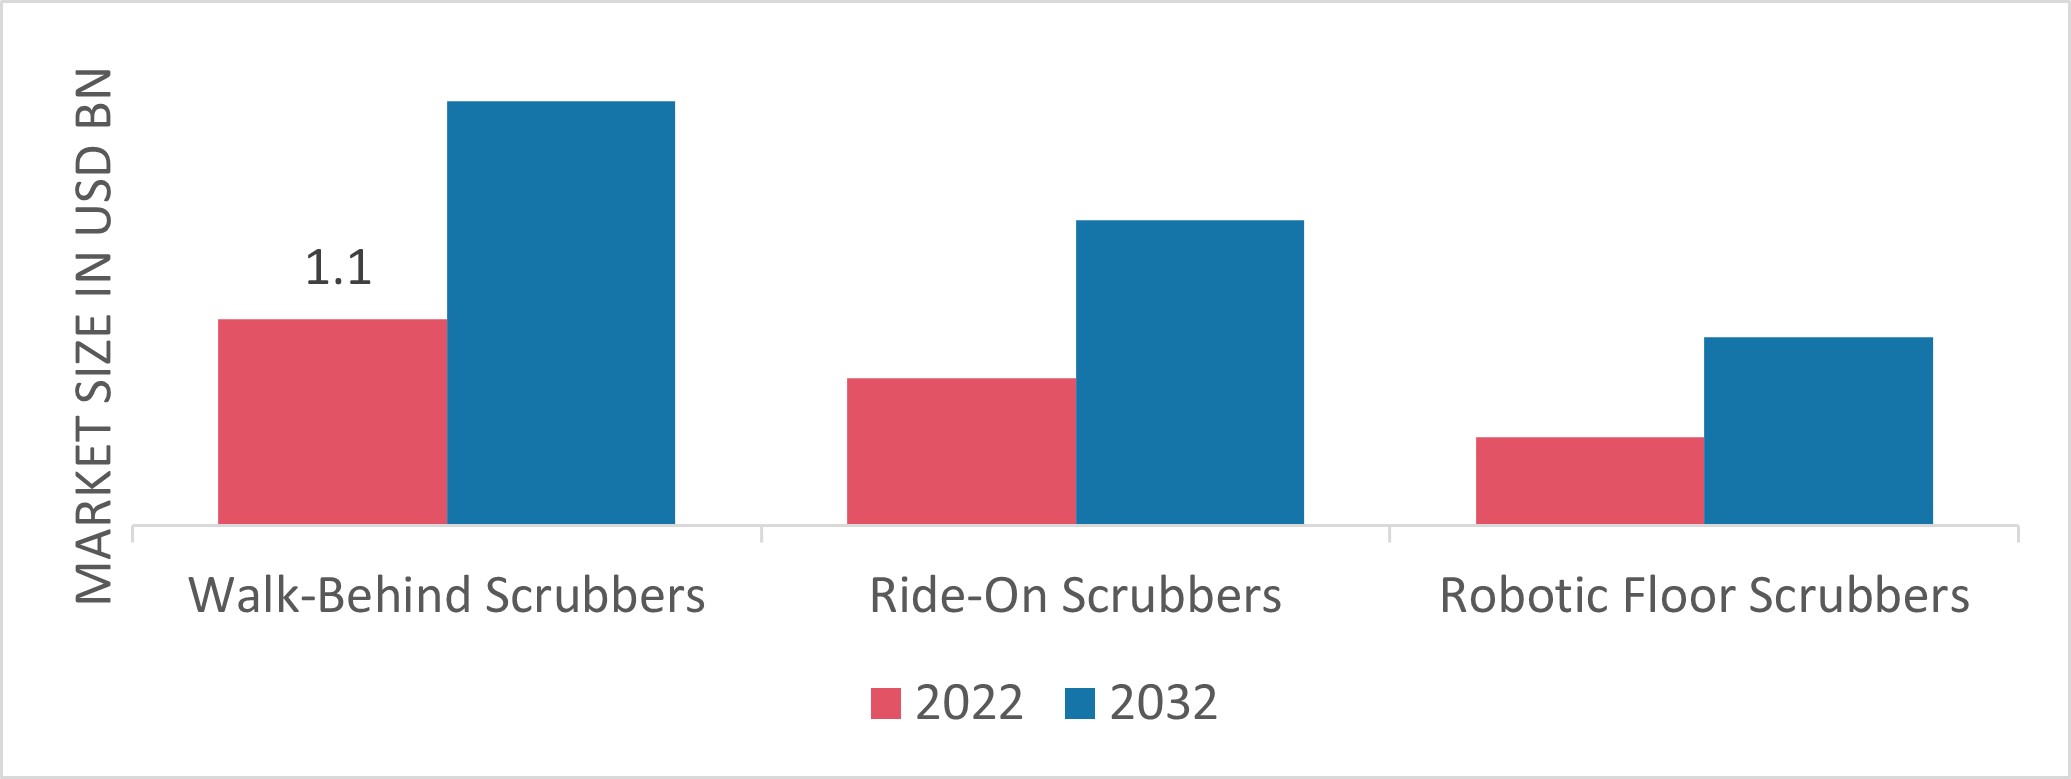 Industrial Floor Scrubber Market by Type, 2022 & 2032